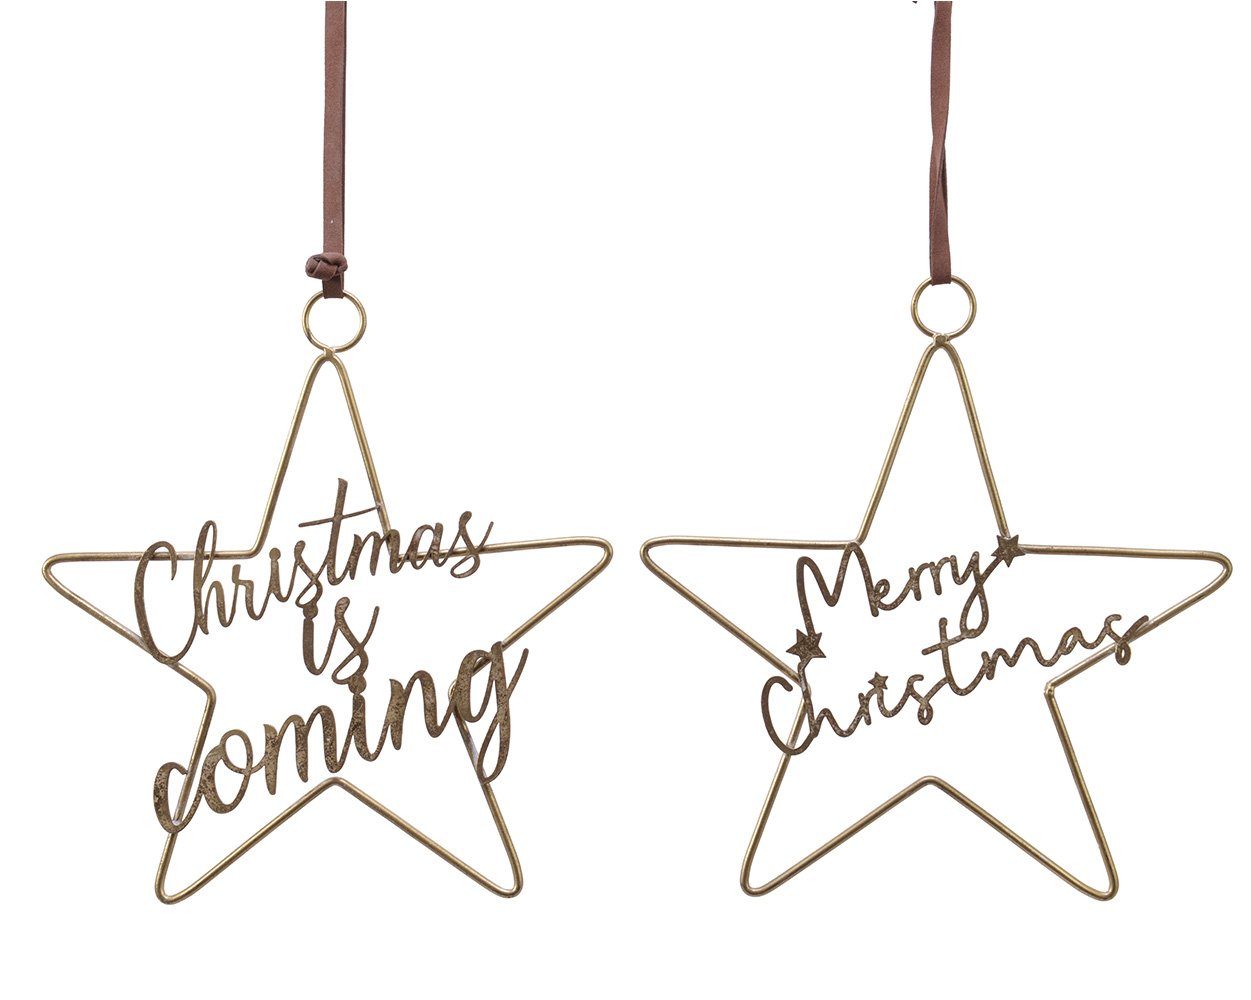 Decoris season decorations Christbaumschmuck, Weihnachtsanhänger Metall Stern mit Schriftzug 33cm gold, 1 Stück sort